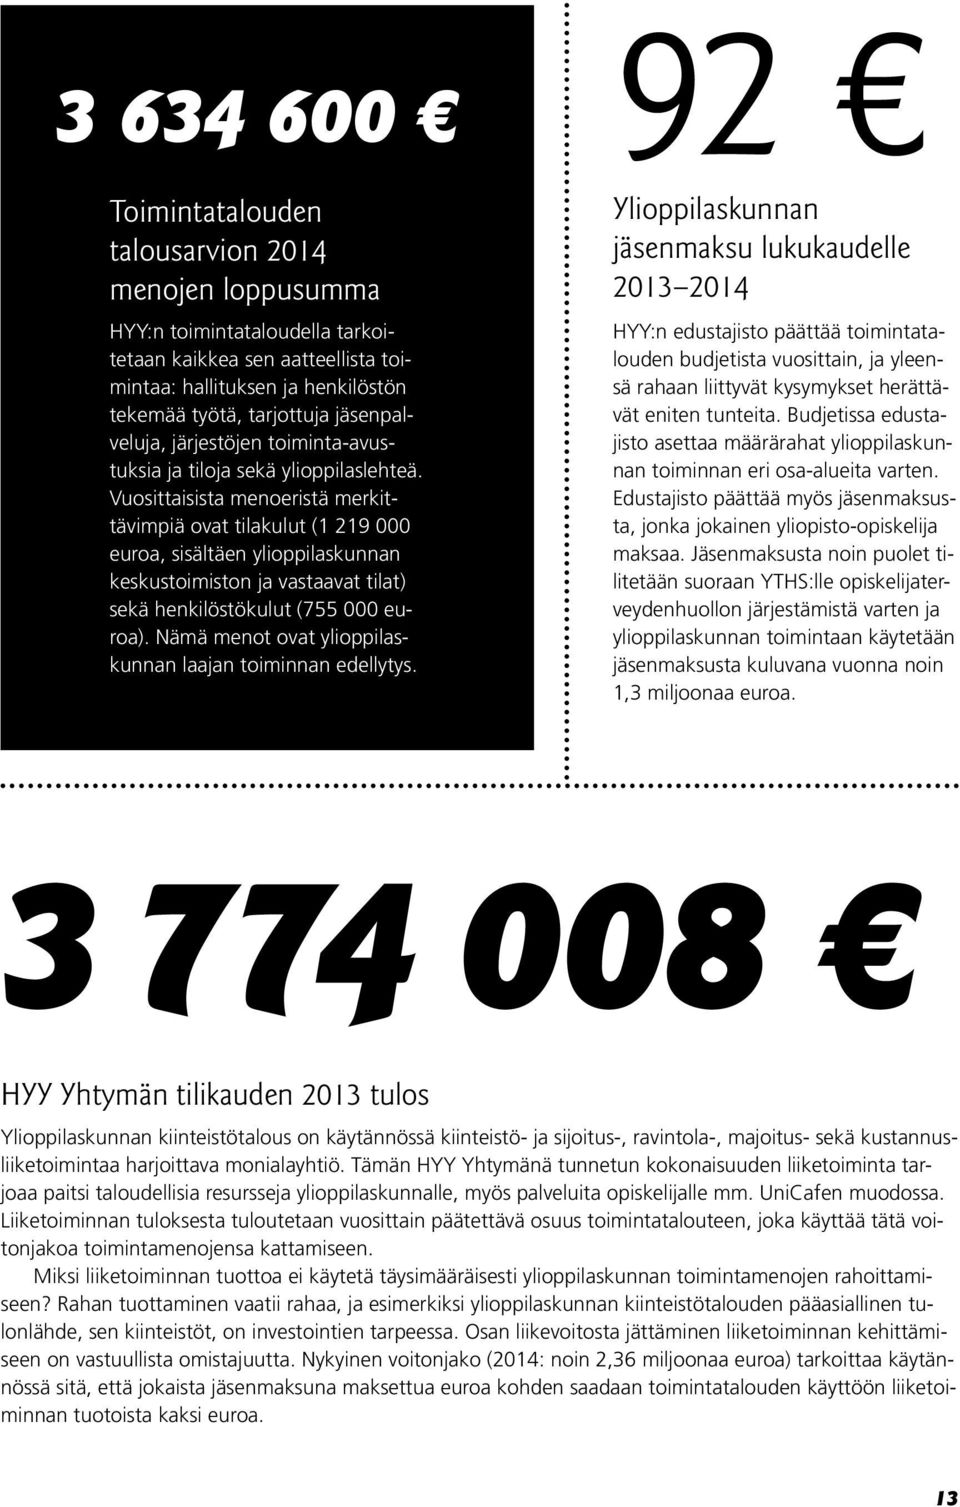 Vuosittaisista menoeristä merkittävimpiä ovat tilakulut (1 219 000 euroa, sisältäen ylioppilaskunnan keskustoimiston ja vastaavat tilat) sekä henkilöstökulut (755 000 euroa).